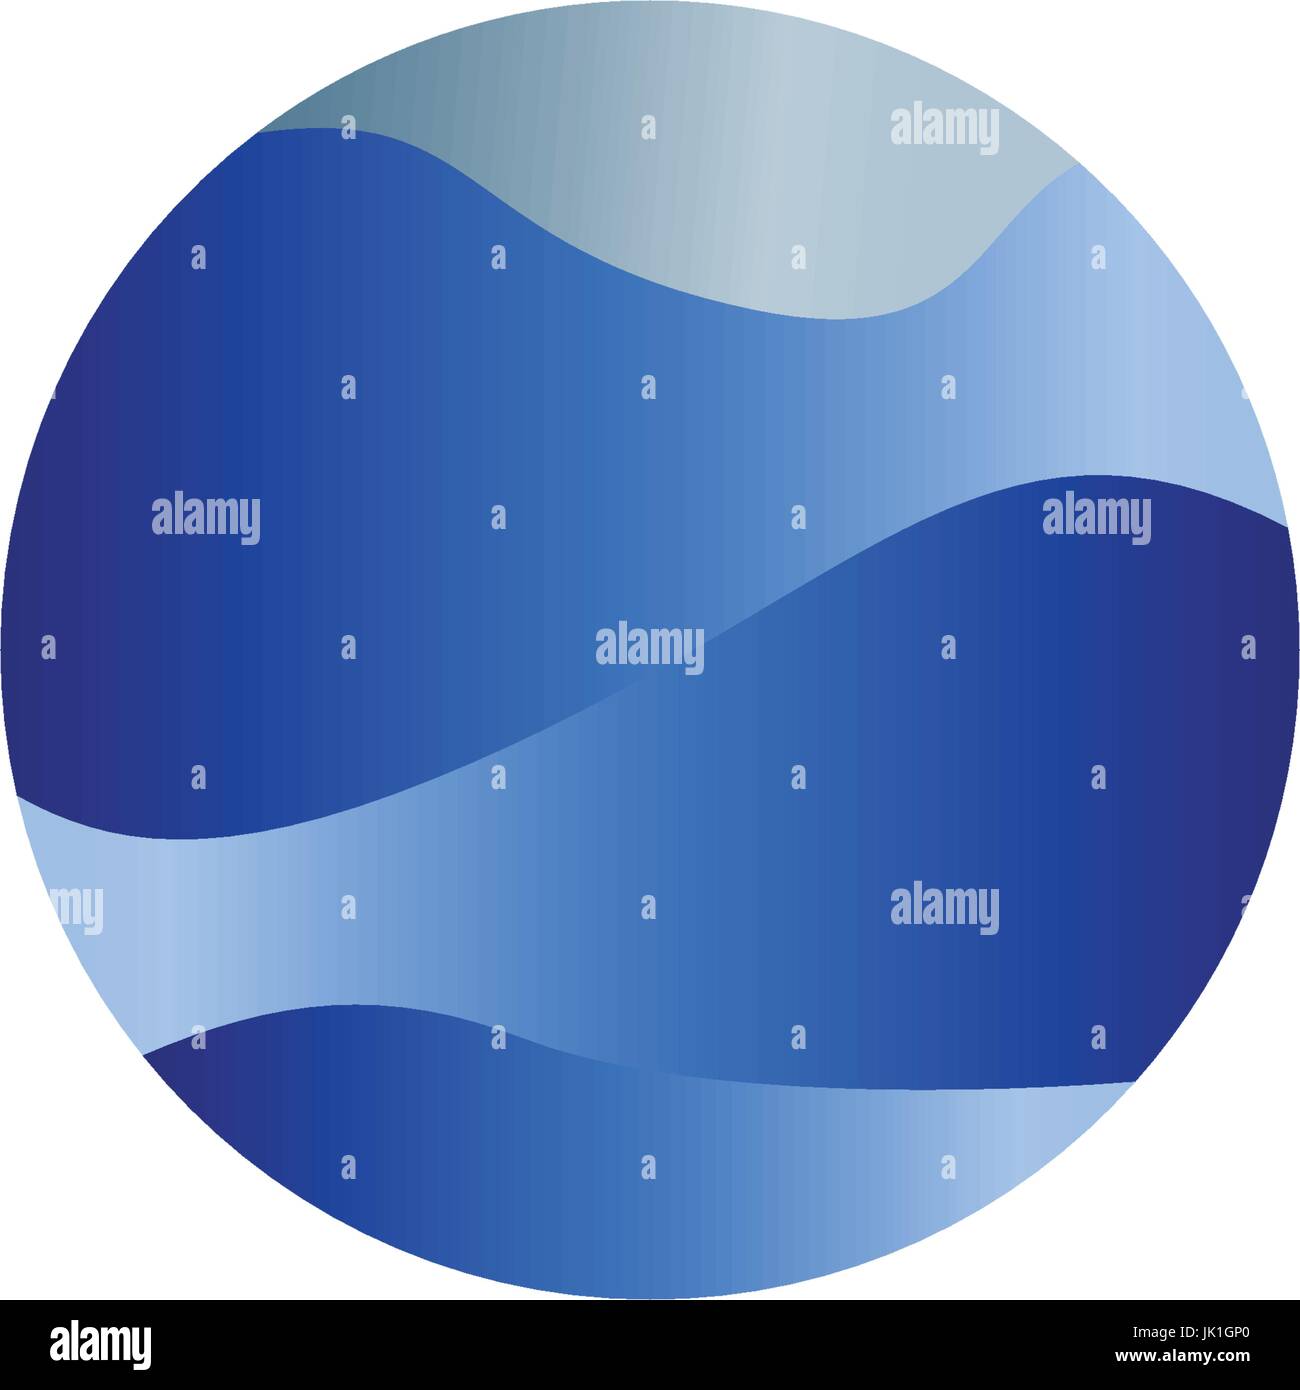 Résumé La forme ronde isolée, liquide couleur bleu océan, vague et sky, cloud logo. Logotype vectoriel stylisé de l'eau. Illustration de Vecteur